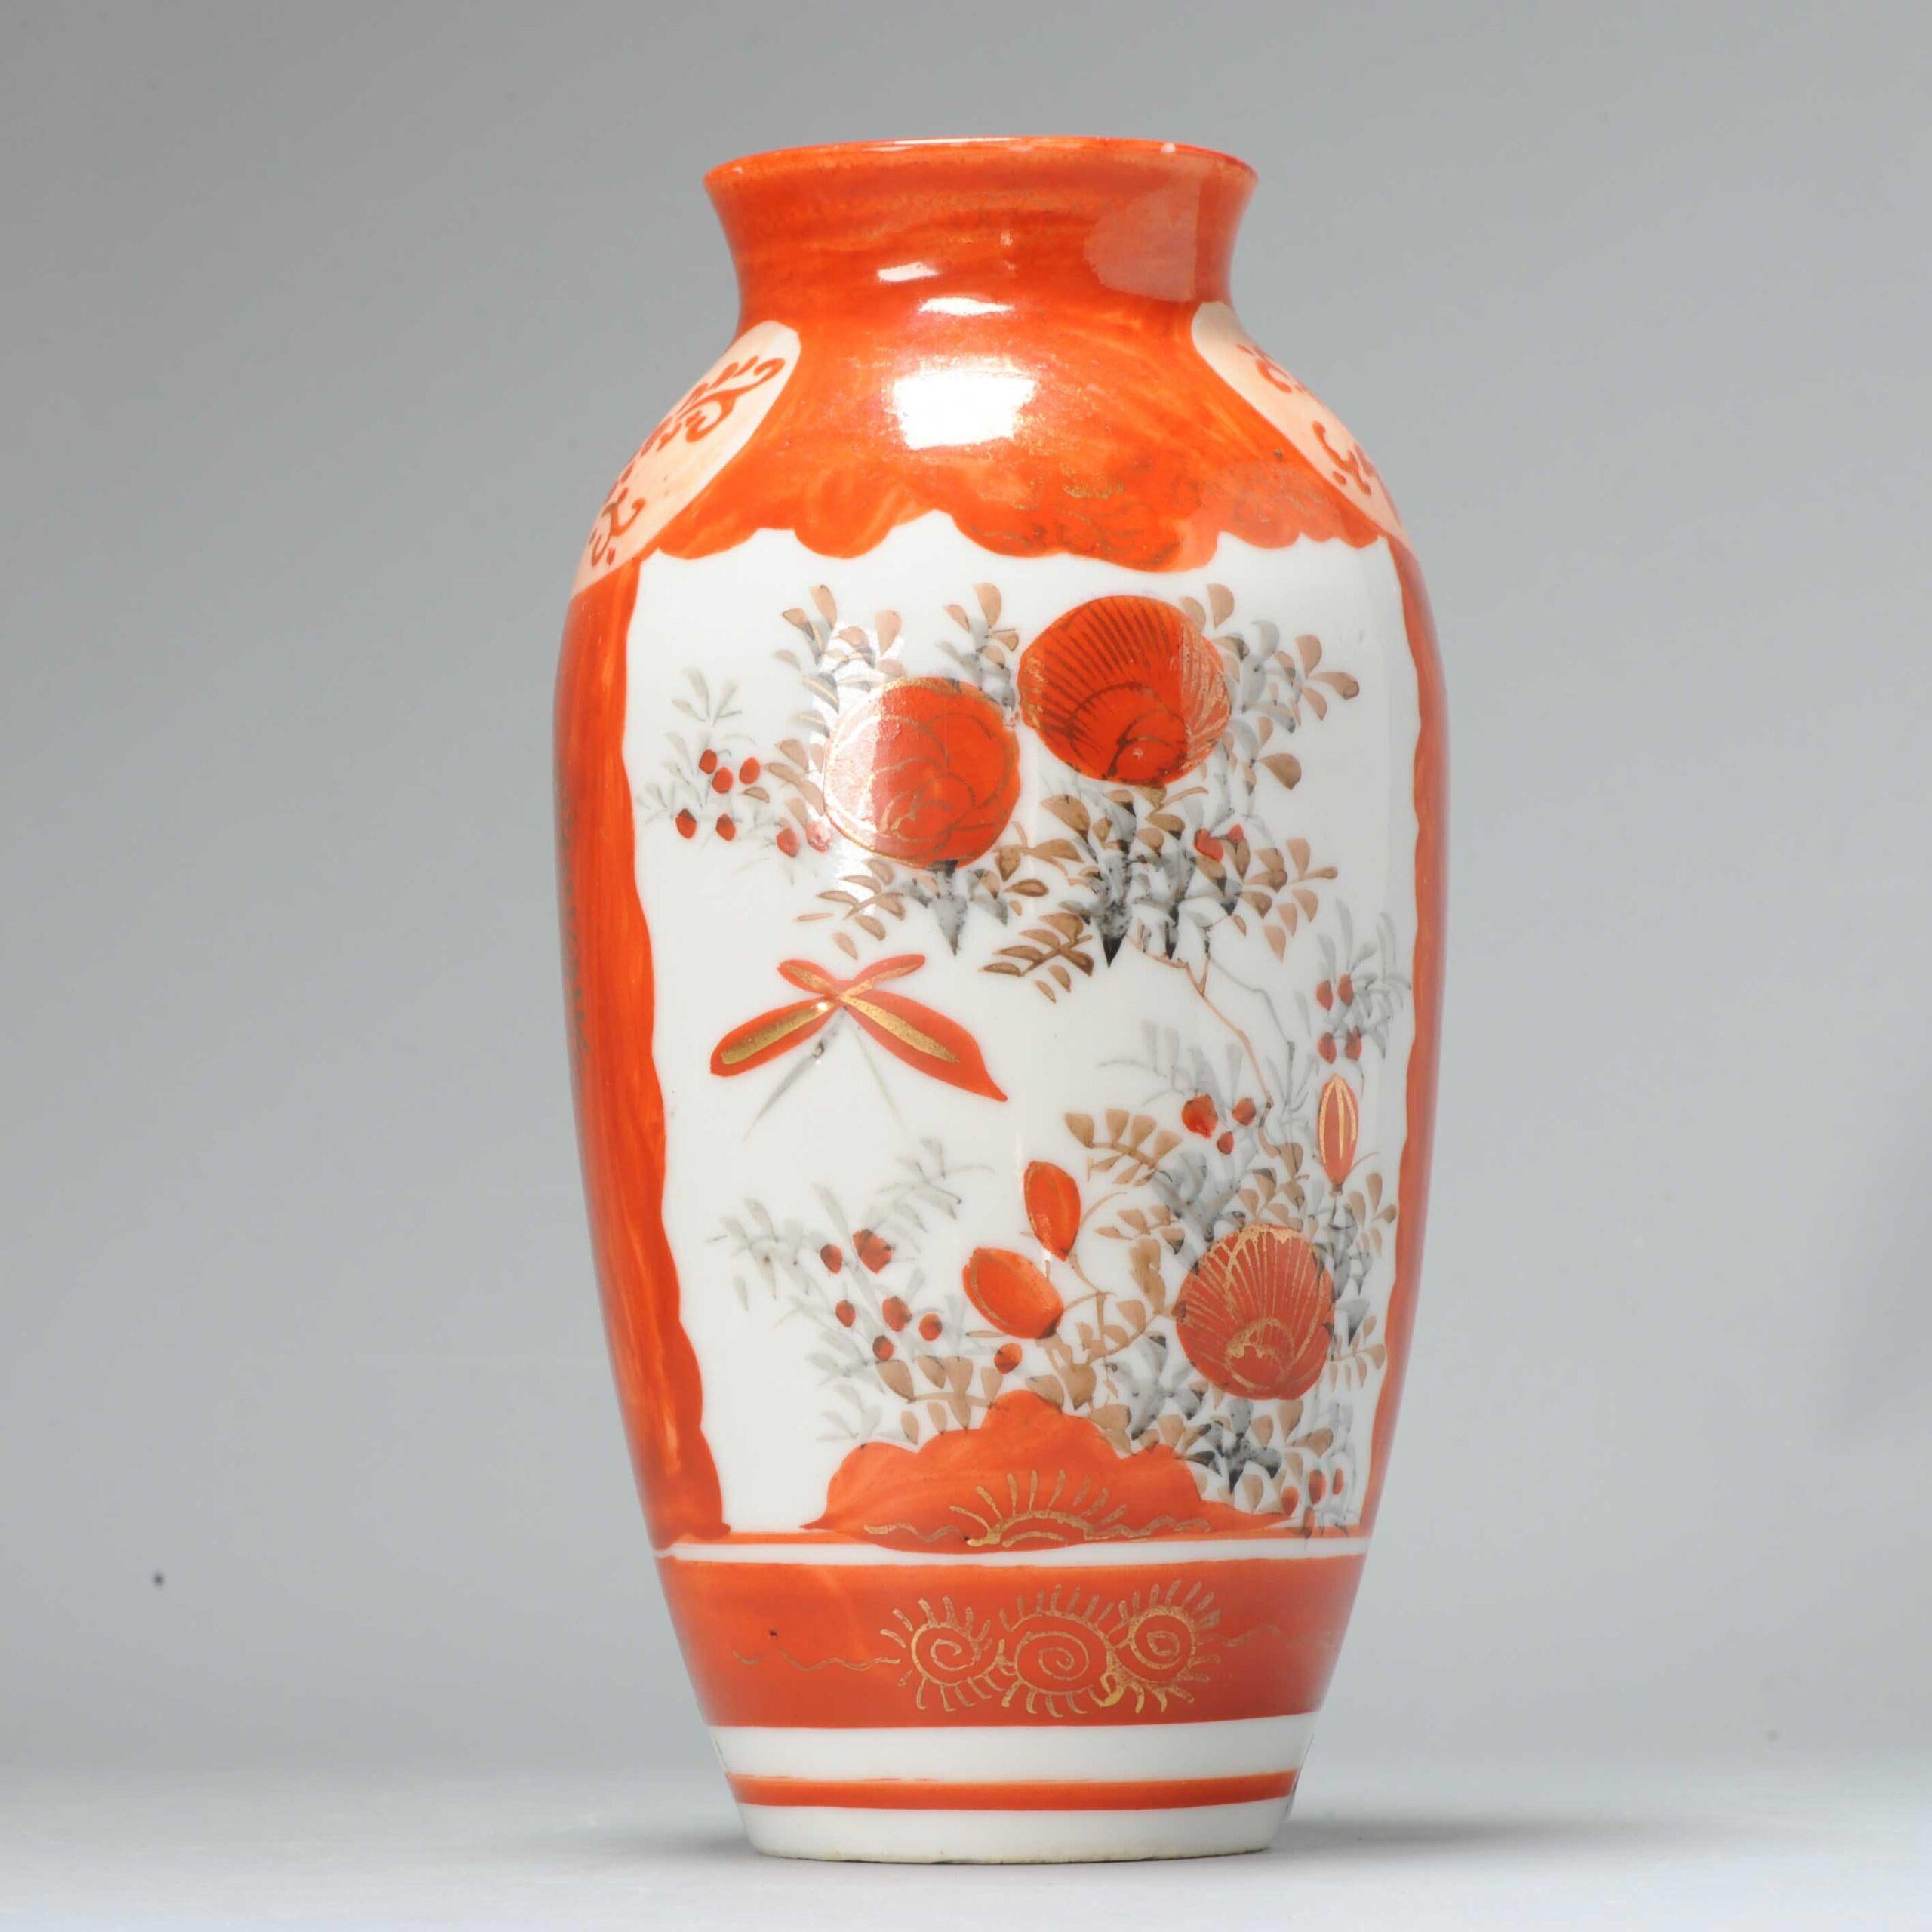 Ancien vase japonais Kutani rouge et blanc de la période Meiji, 19e siècle.

Travaux de peinture de qualité.

Informations complémentaires :
MATERIAL : Porcelaine et poterie
Type : Vase
Style japonais : Kutani
Région d'origine : Japon
Période : XIXe